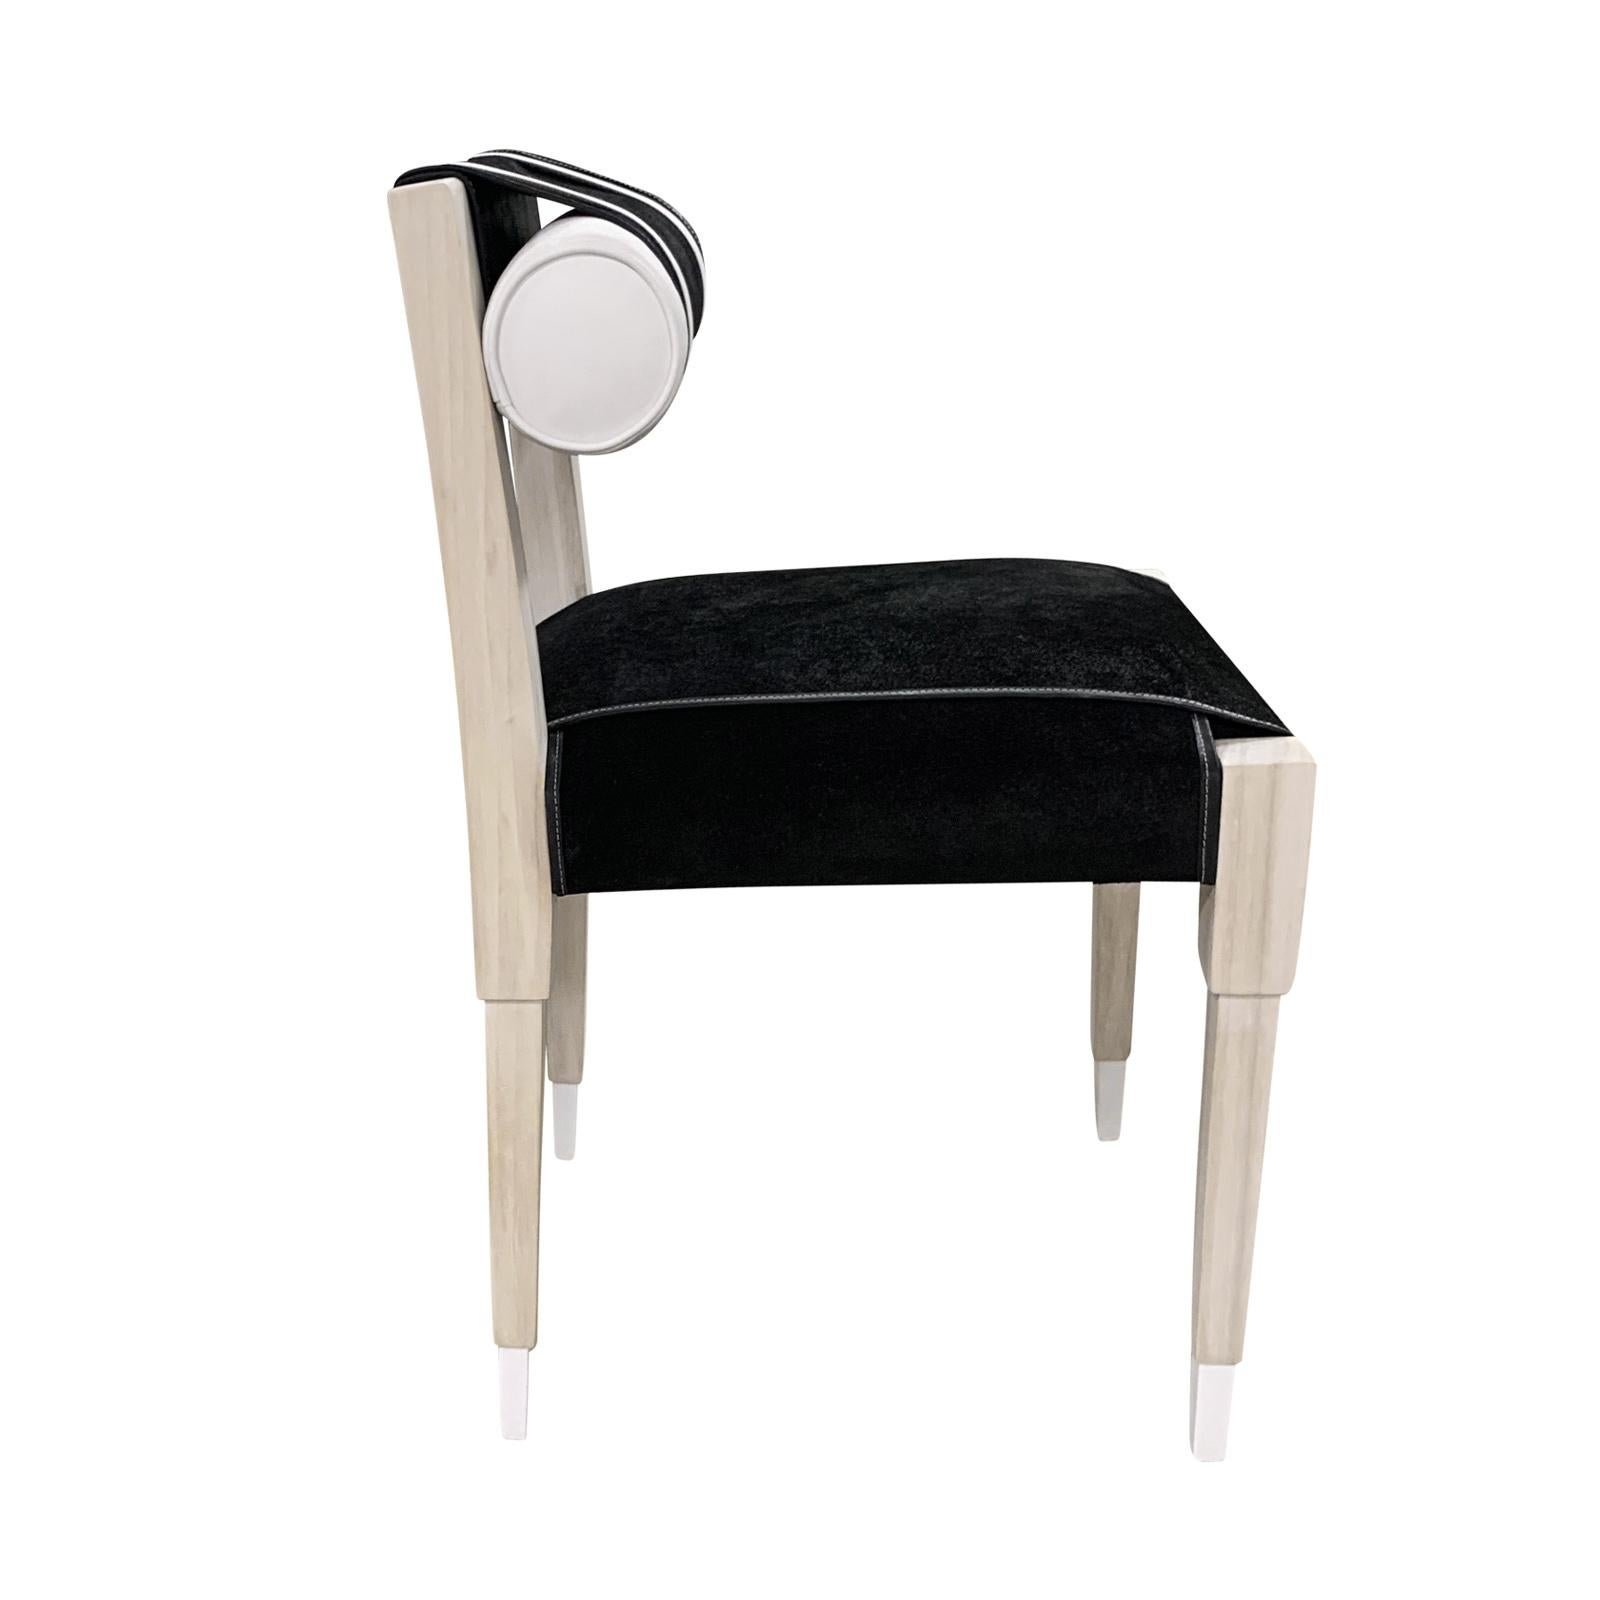 La chaise N°5 se caractérise par un profil et un style élégants. Cette magnifique chaise combine un cadre en chêne blanchi avec les plus belles lanières en daim noir + vinyle blanc (également disponible en cuir véritable). Tailles sur mesure